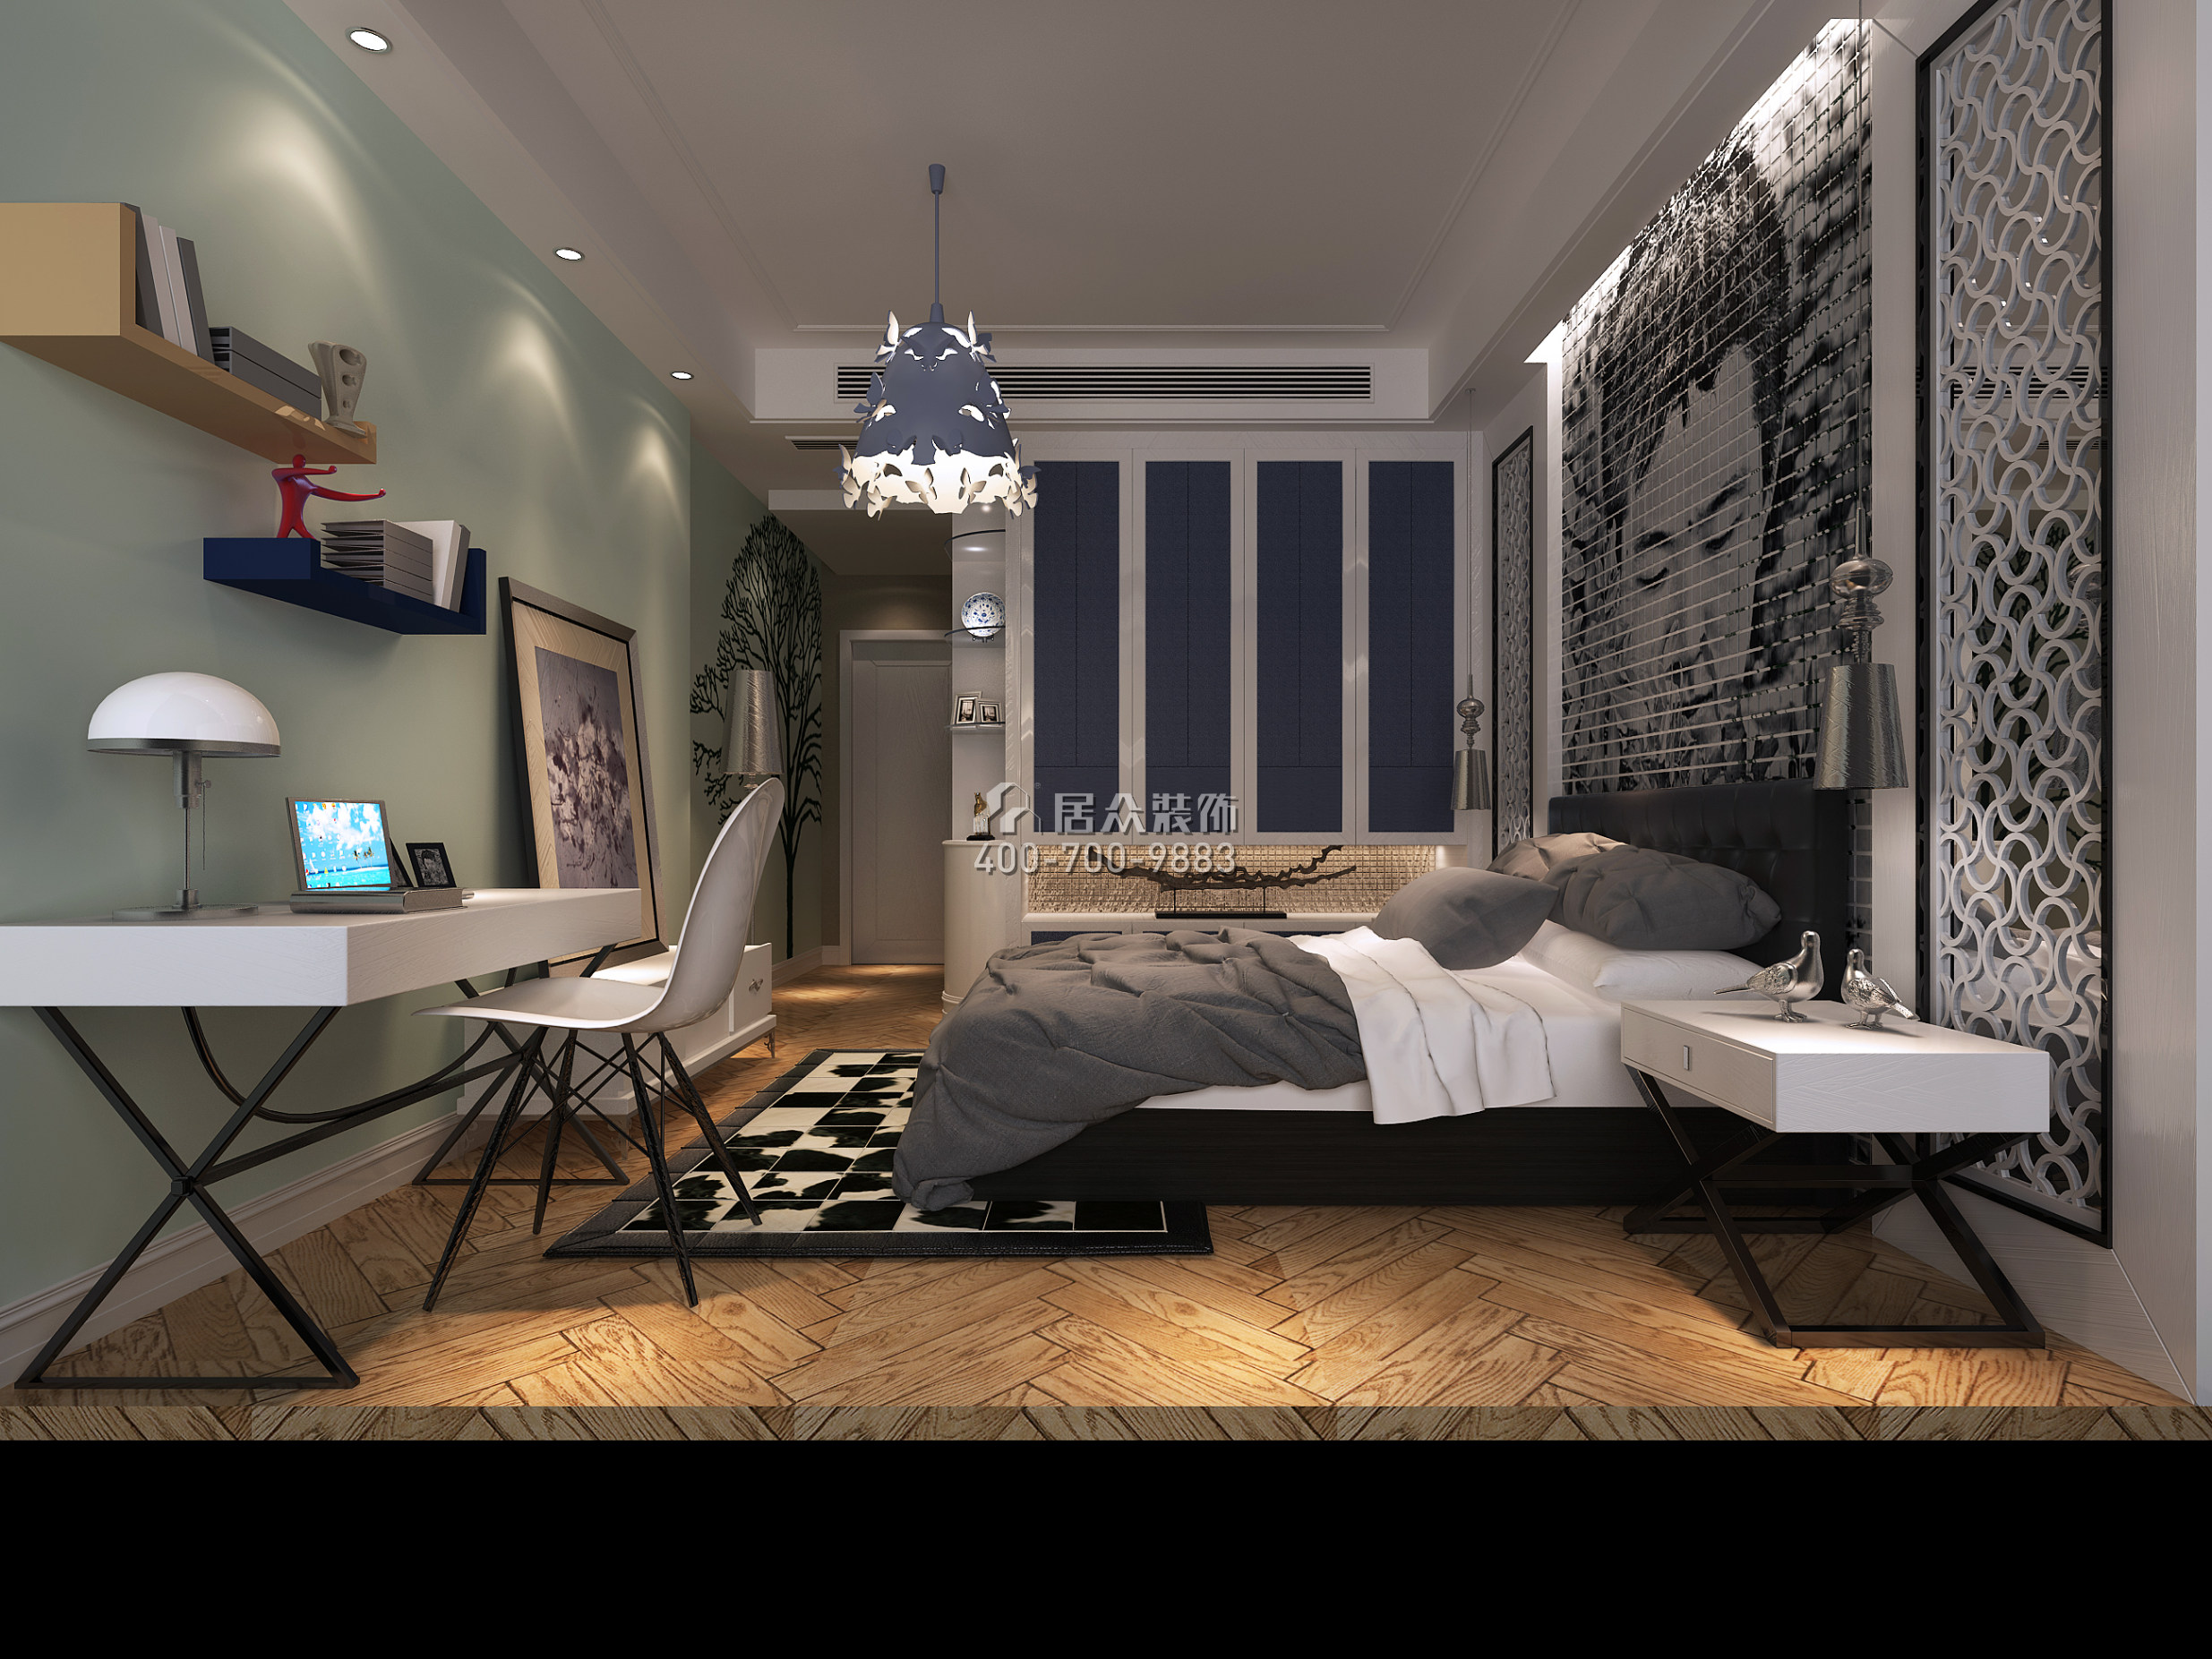 北滘雅居乐英伦首府206平方米欧式风格平层户型卧室装修效果图